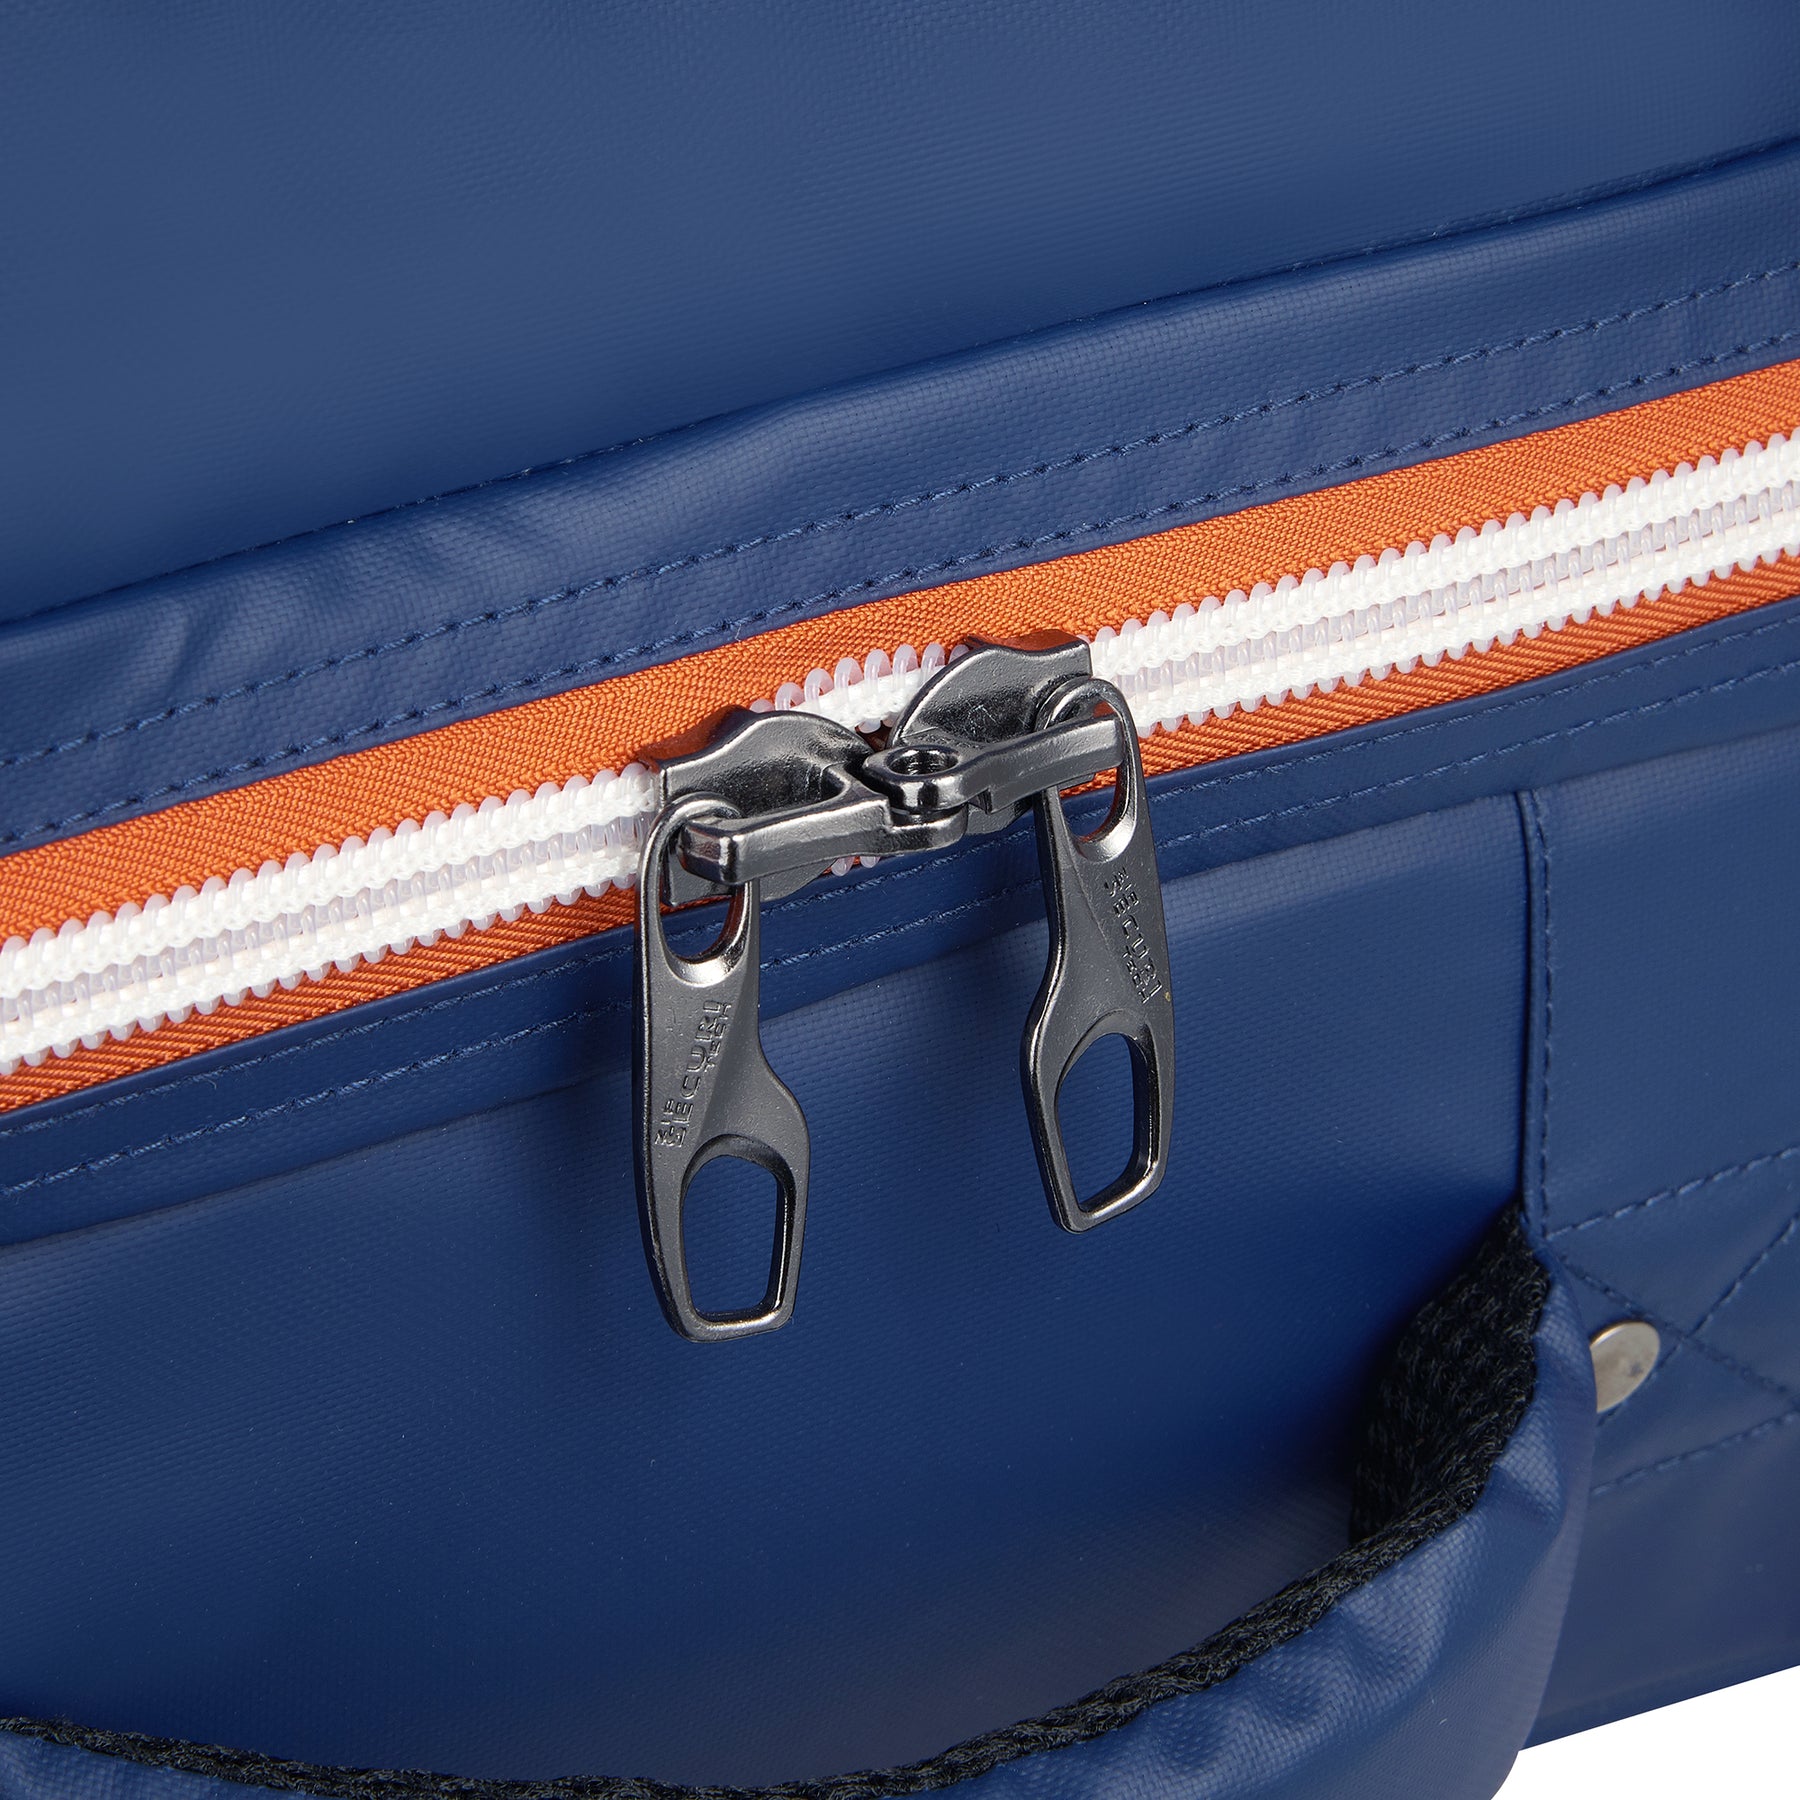 Delsey x Roland-Garros 55 cm suitcase - Clay